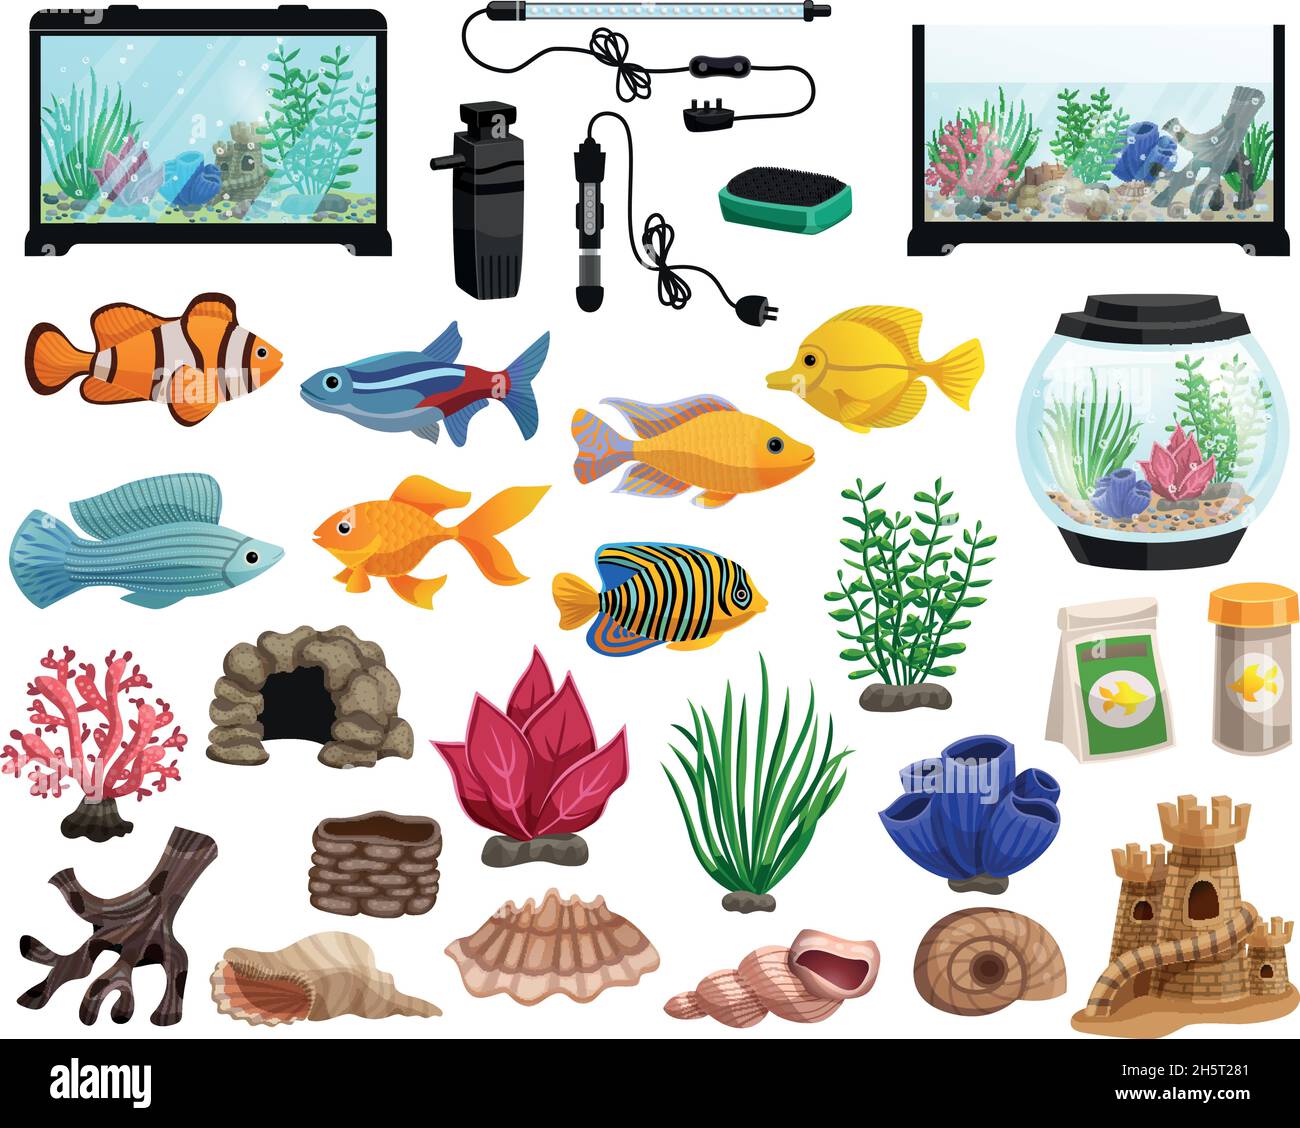 Aquaristik Zeichentrickset mit Aquarium Fische Korallen Steine Algen Muscheln Und Aquariumbecken in verschiedenen Formen Vektor-Illustration Stock Vektor